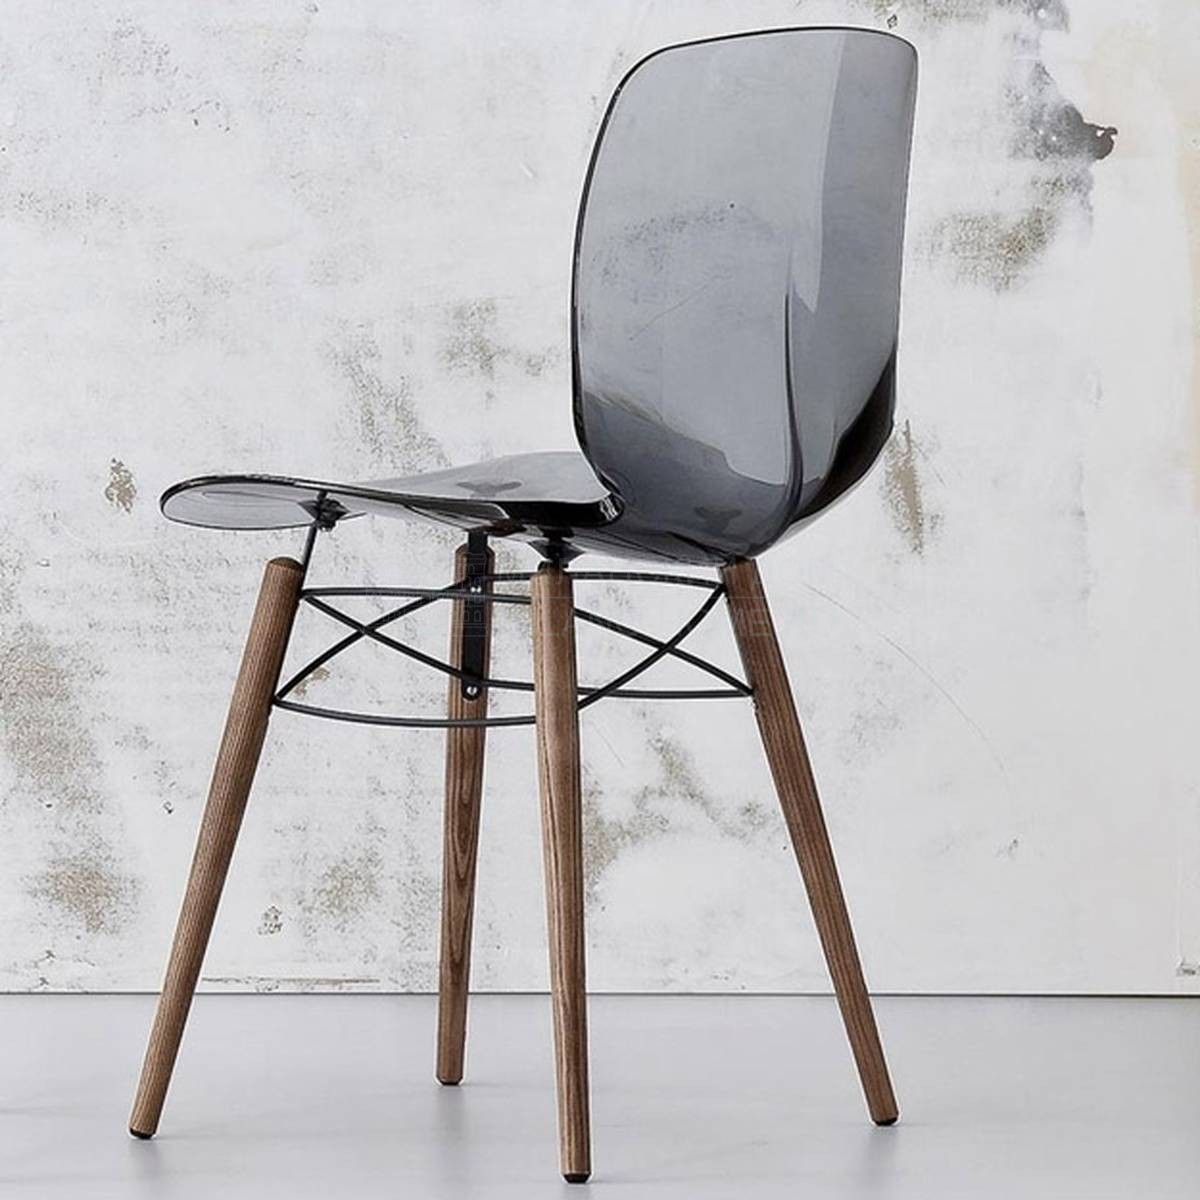 Металлический / Пластиковый стул Loto W /chair из Италии фабрики BONALDO